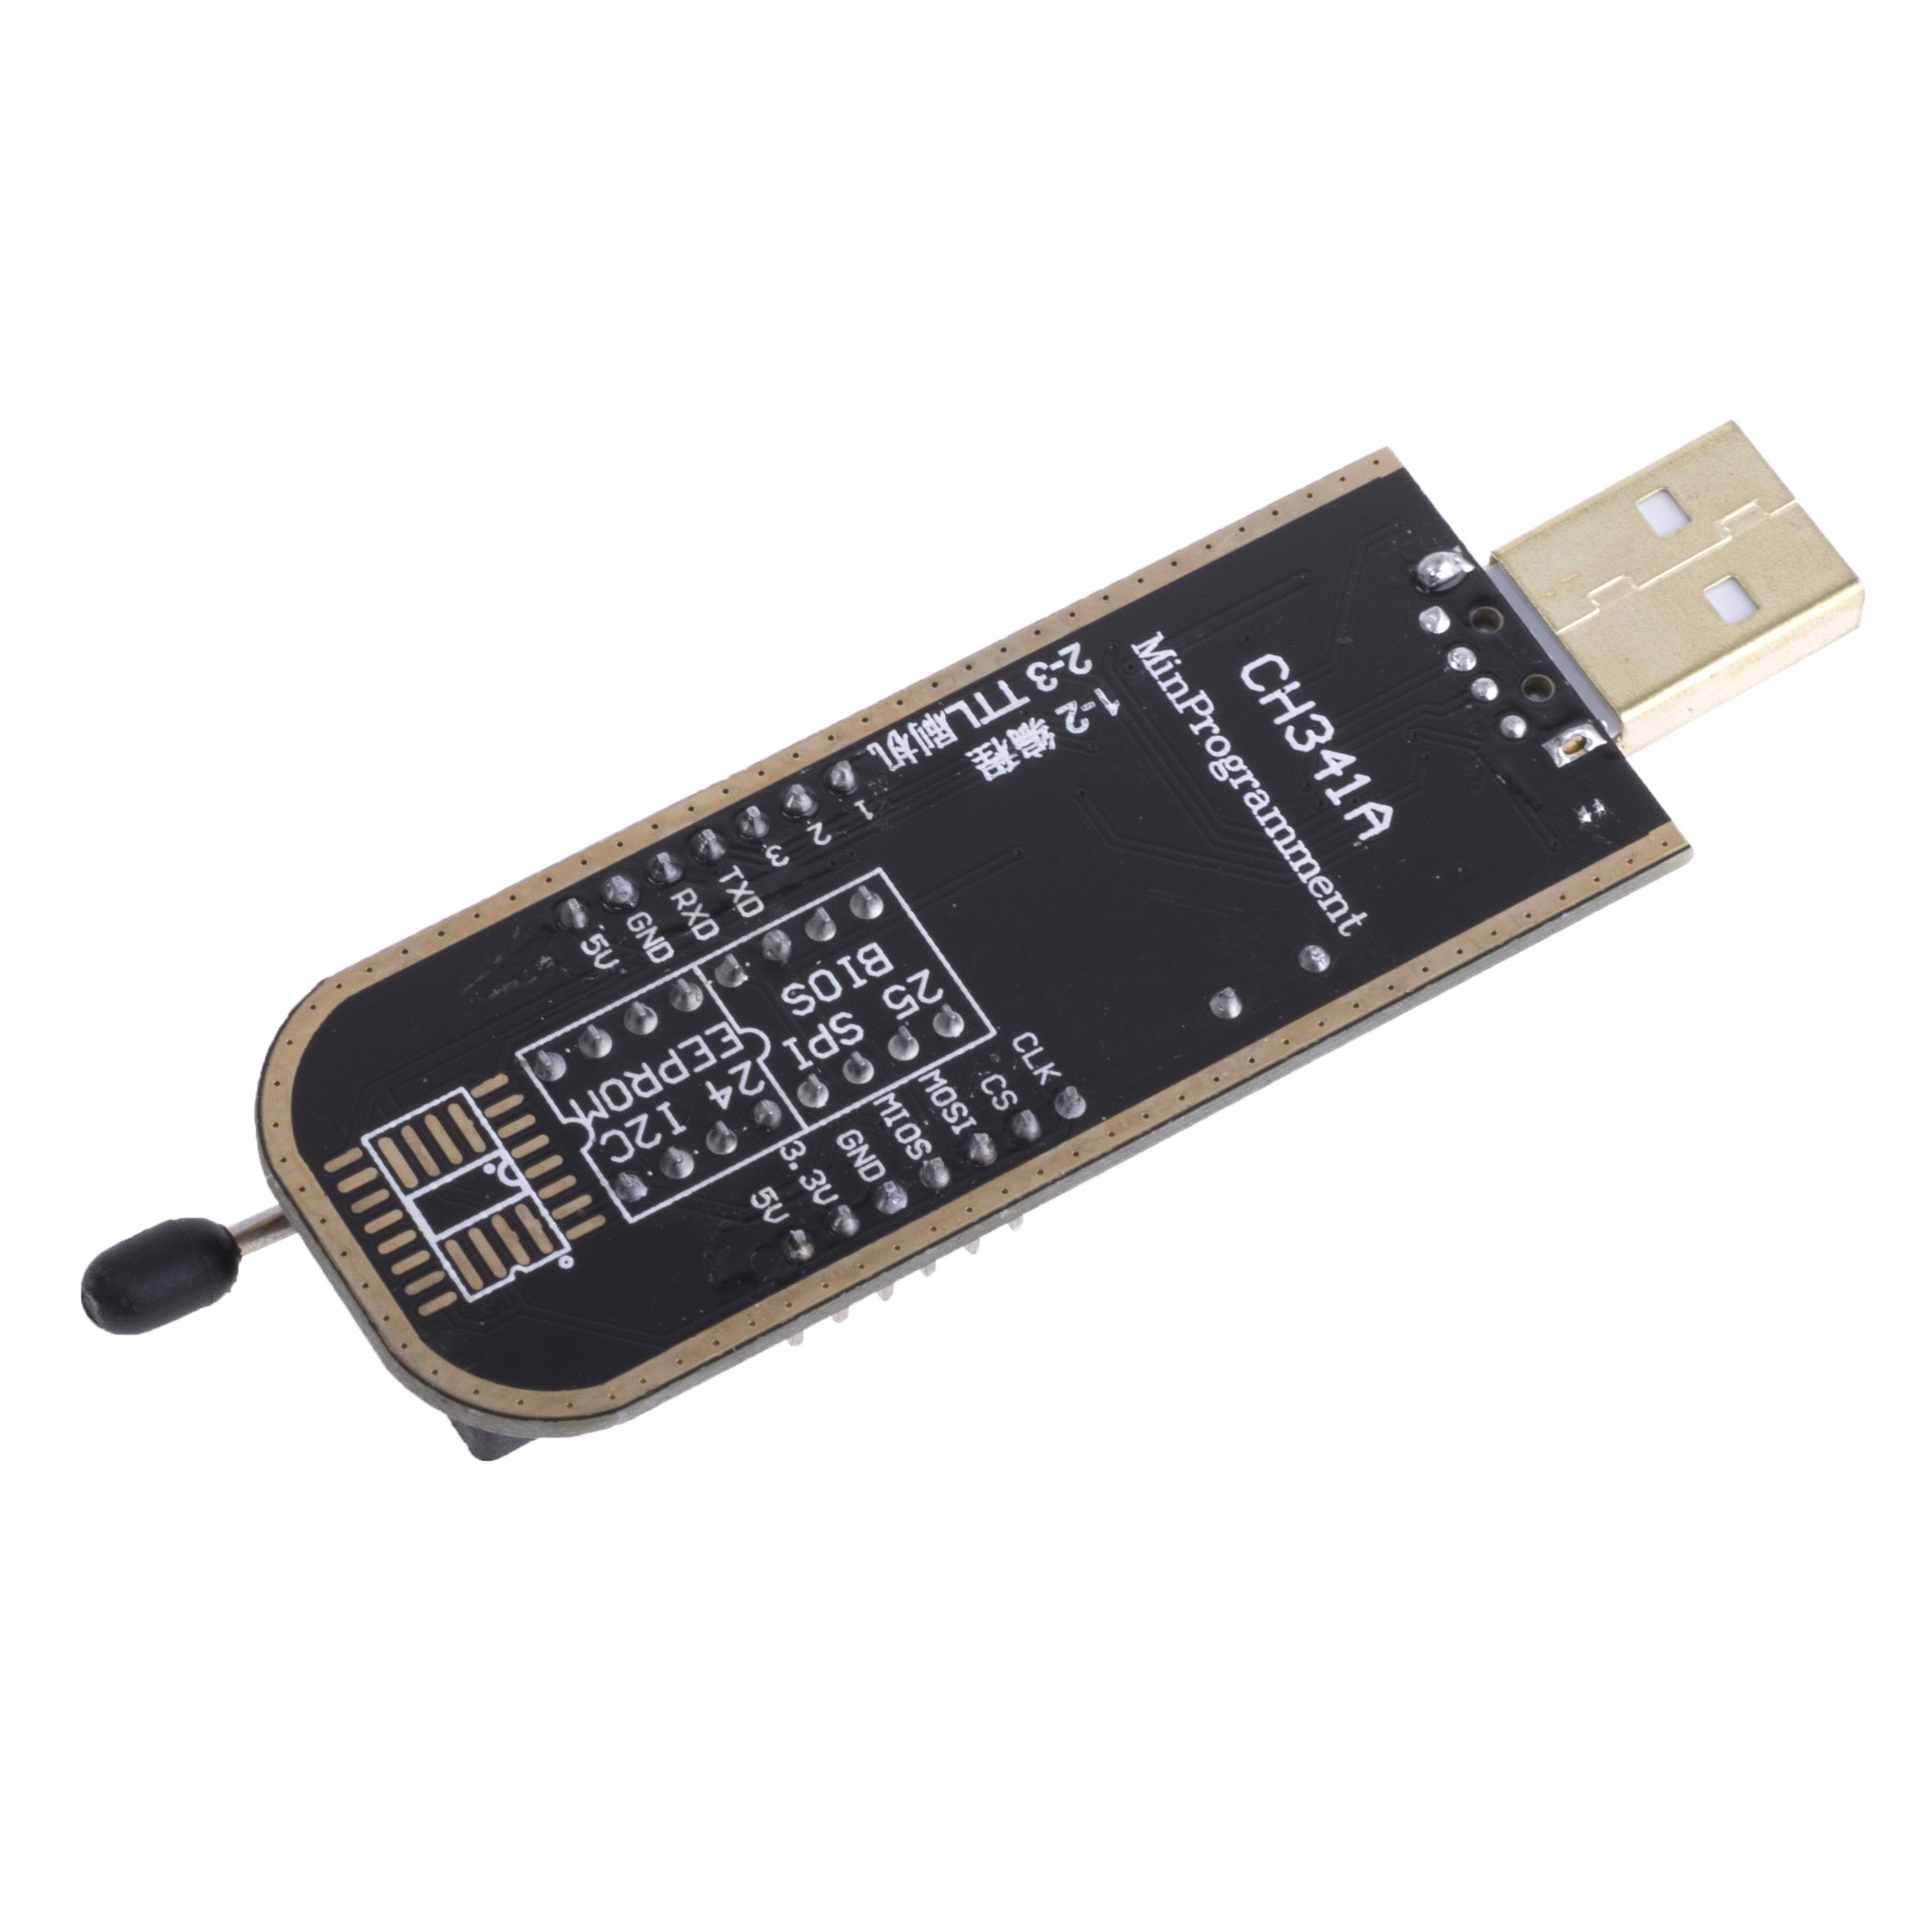 Багатофункціональний USB-програматор CH341A + кліпса для програмування SO-8 внутрішньоплатно